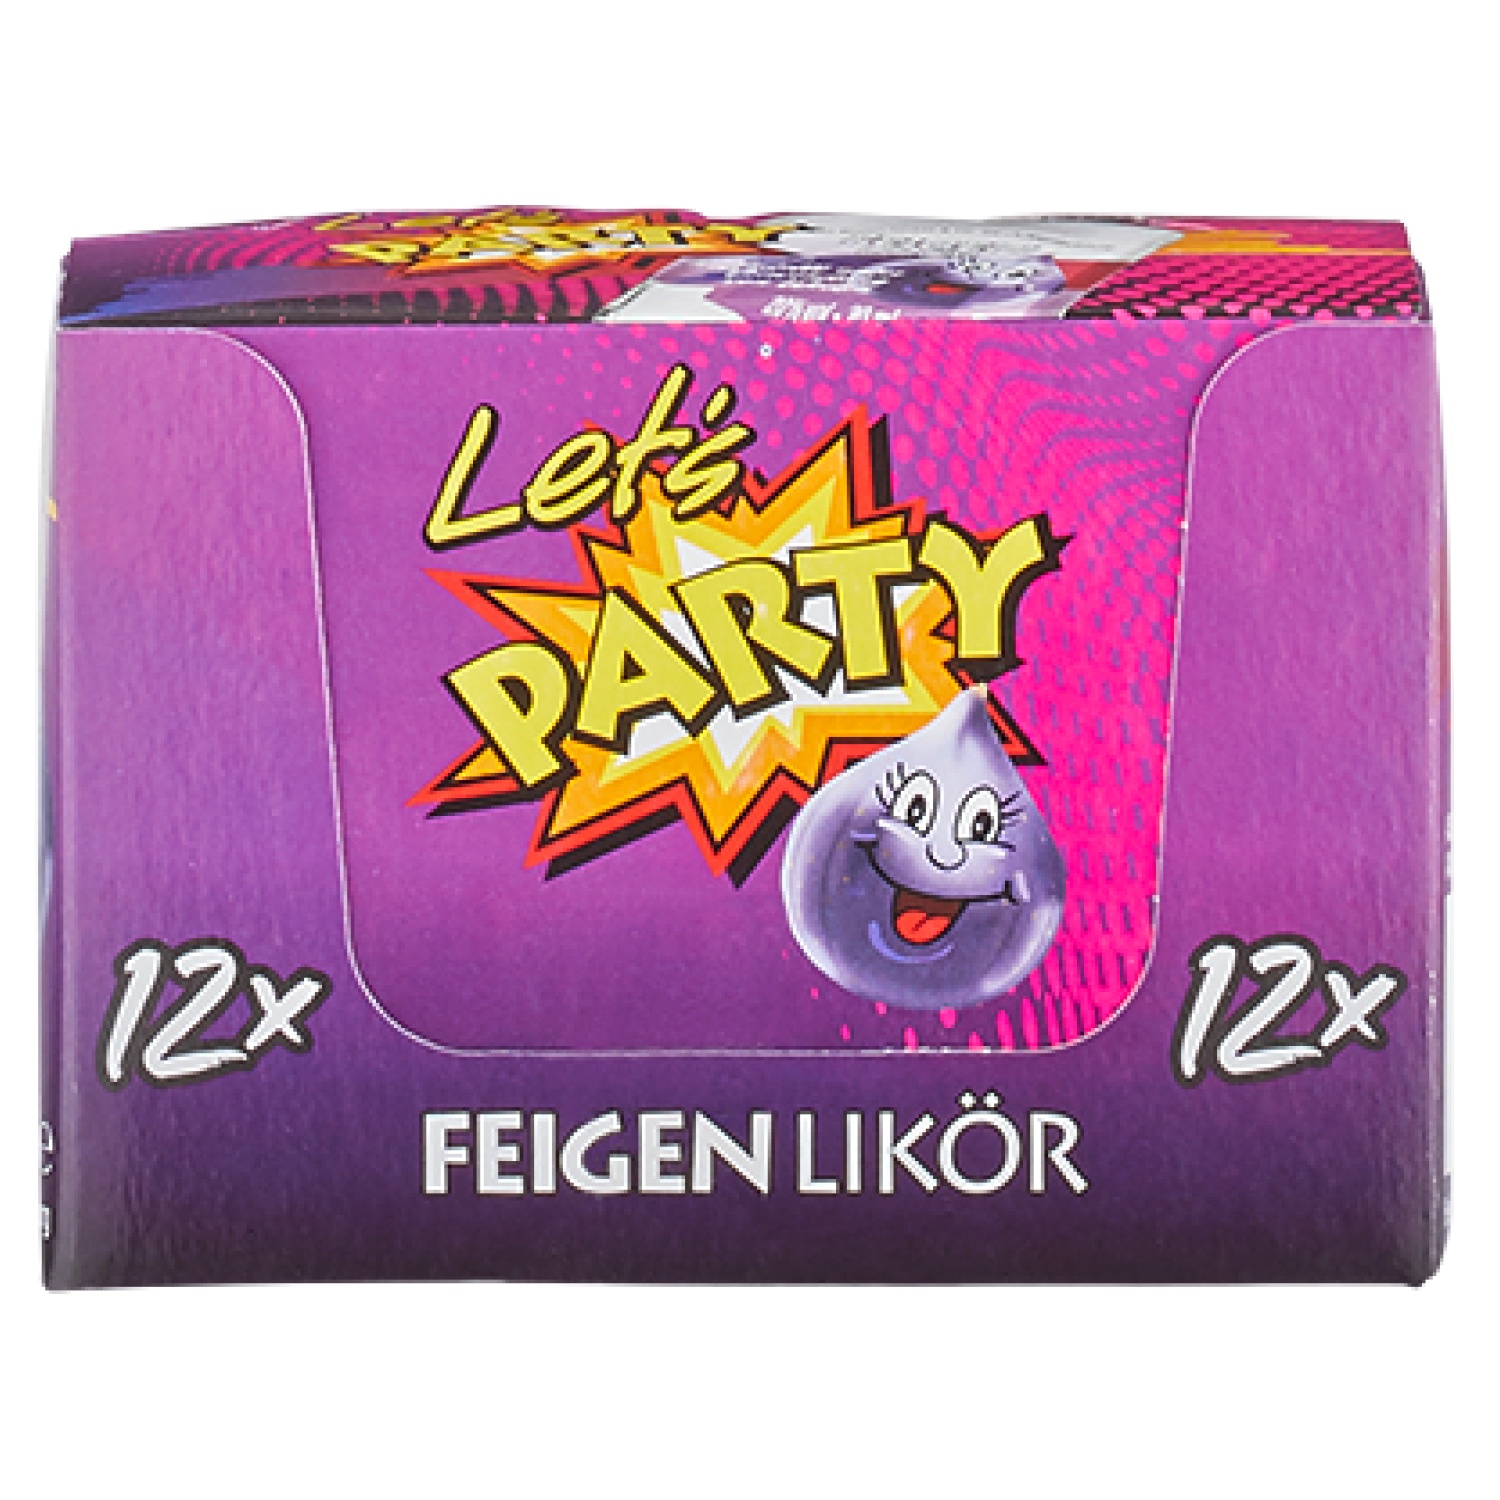 Let‘s PARTY Spirituosen-Sortiment 240 ml